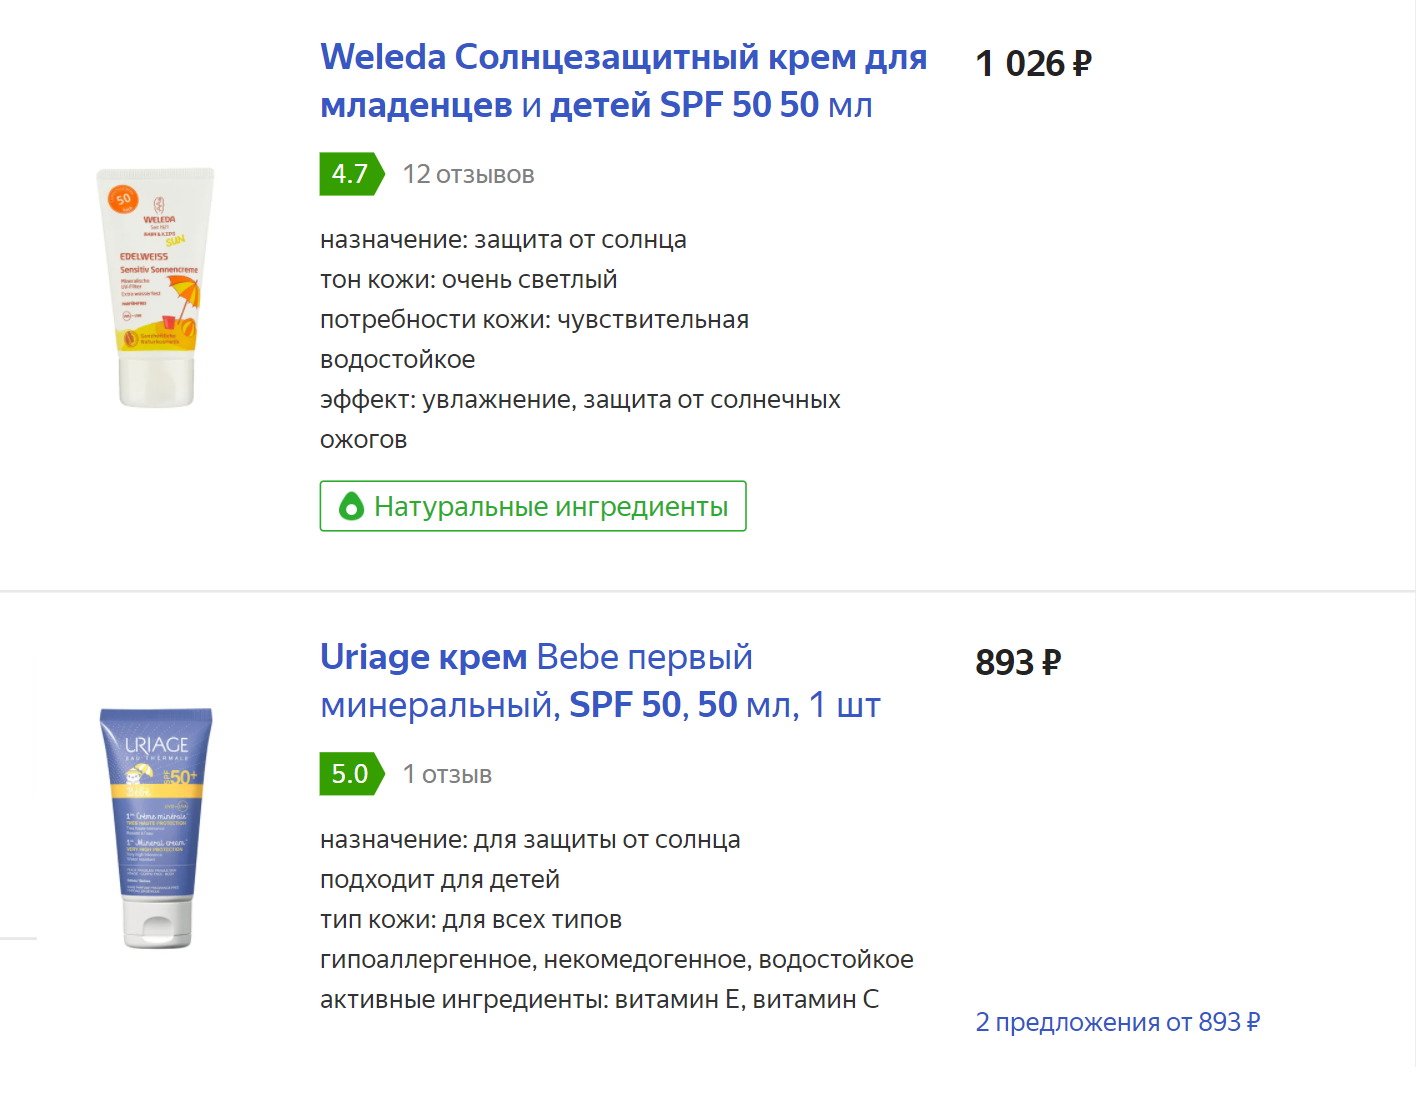 Примеры солнцезащитных кремов для малышей на основе физических фильтров. Источник: «Яндекс-маркет»